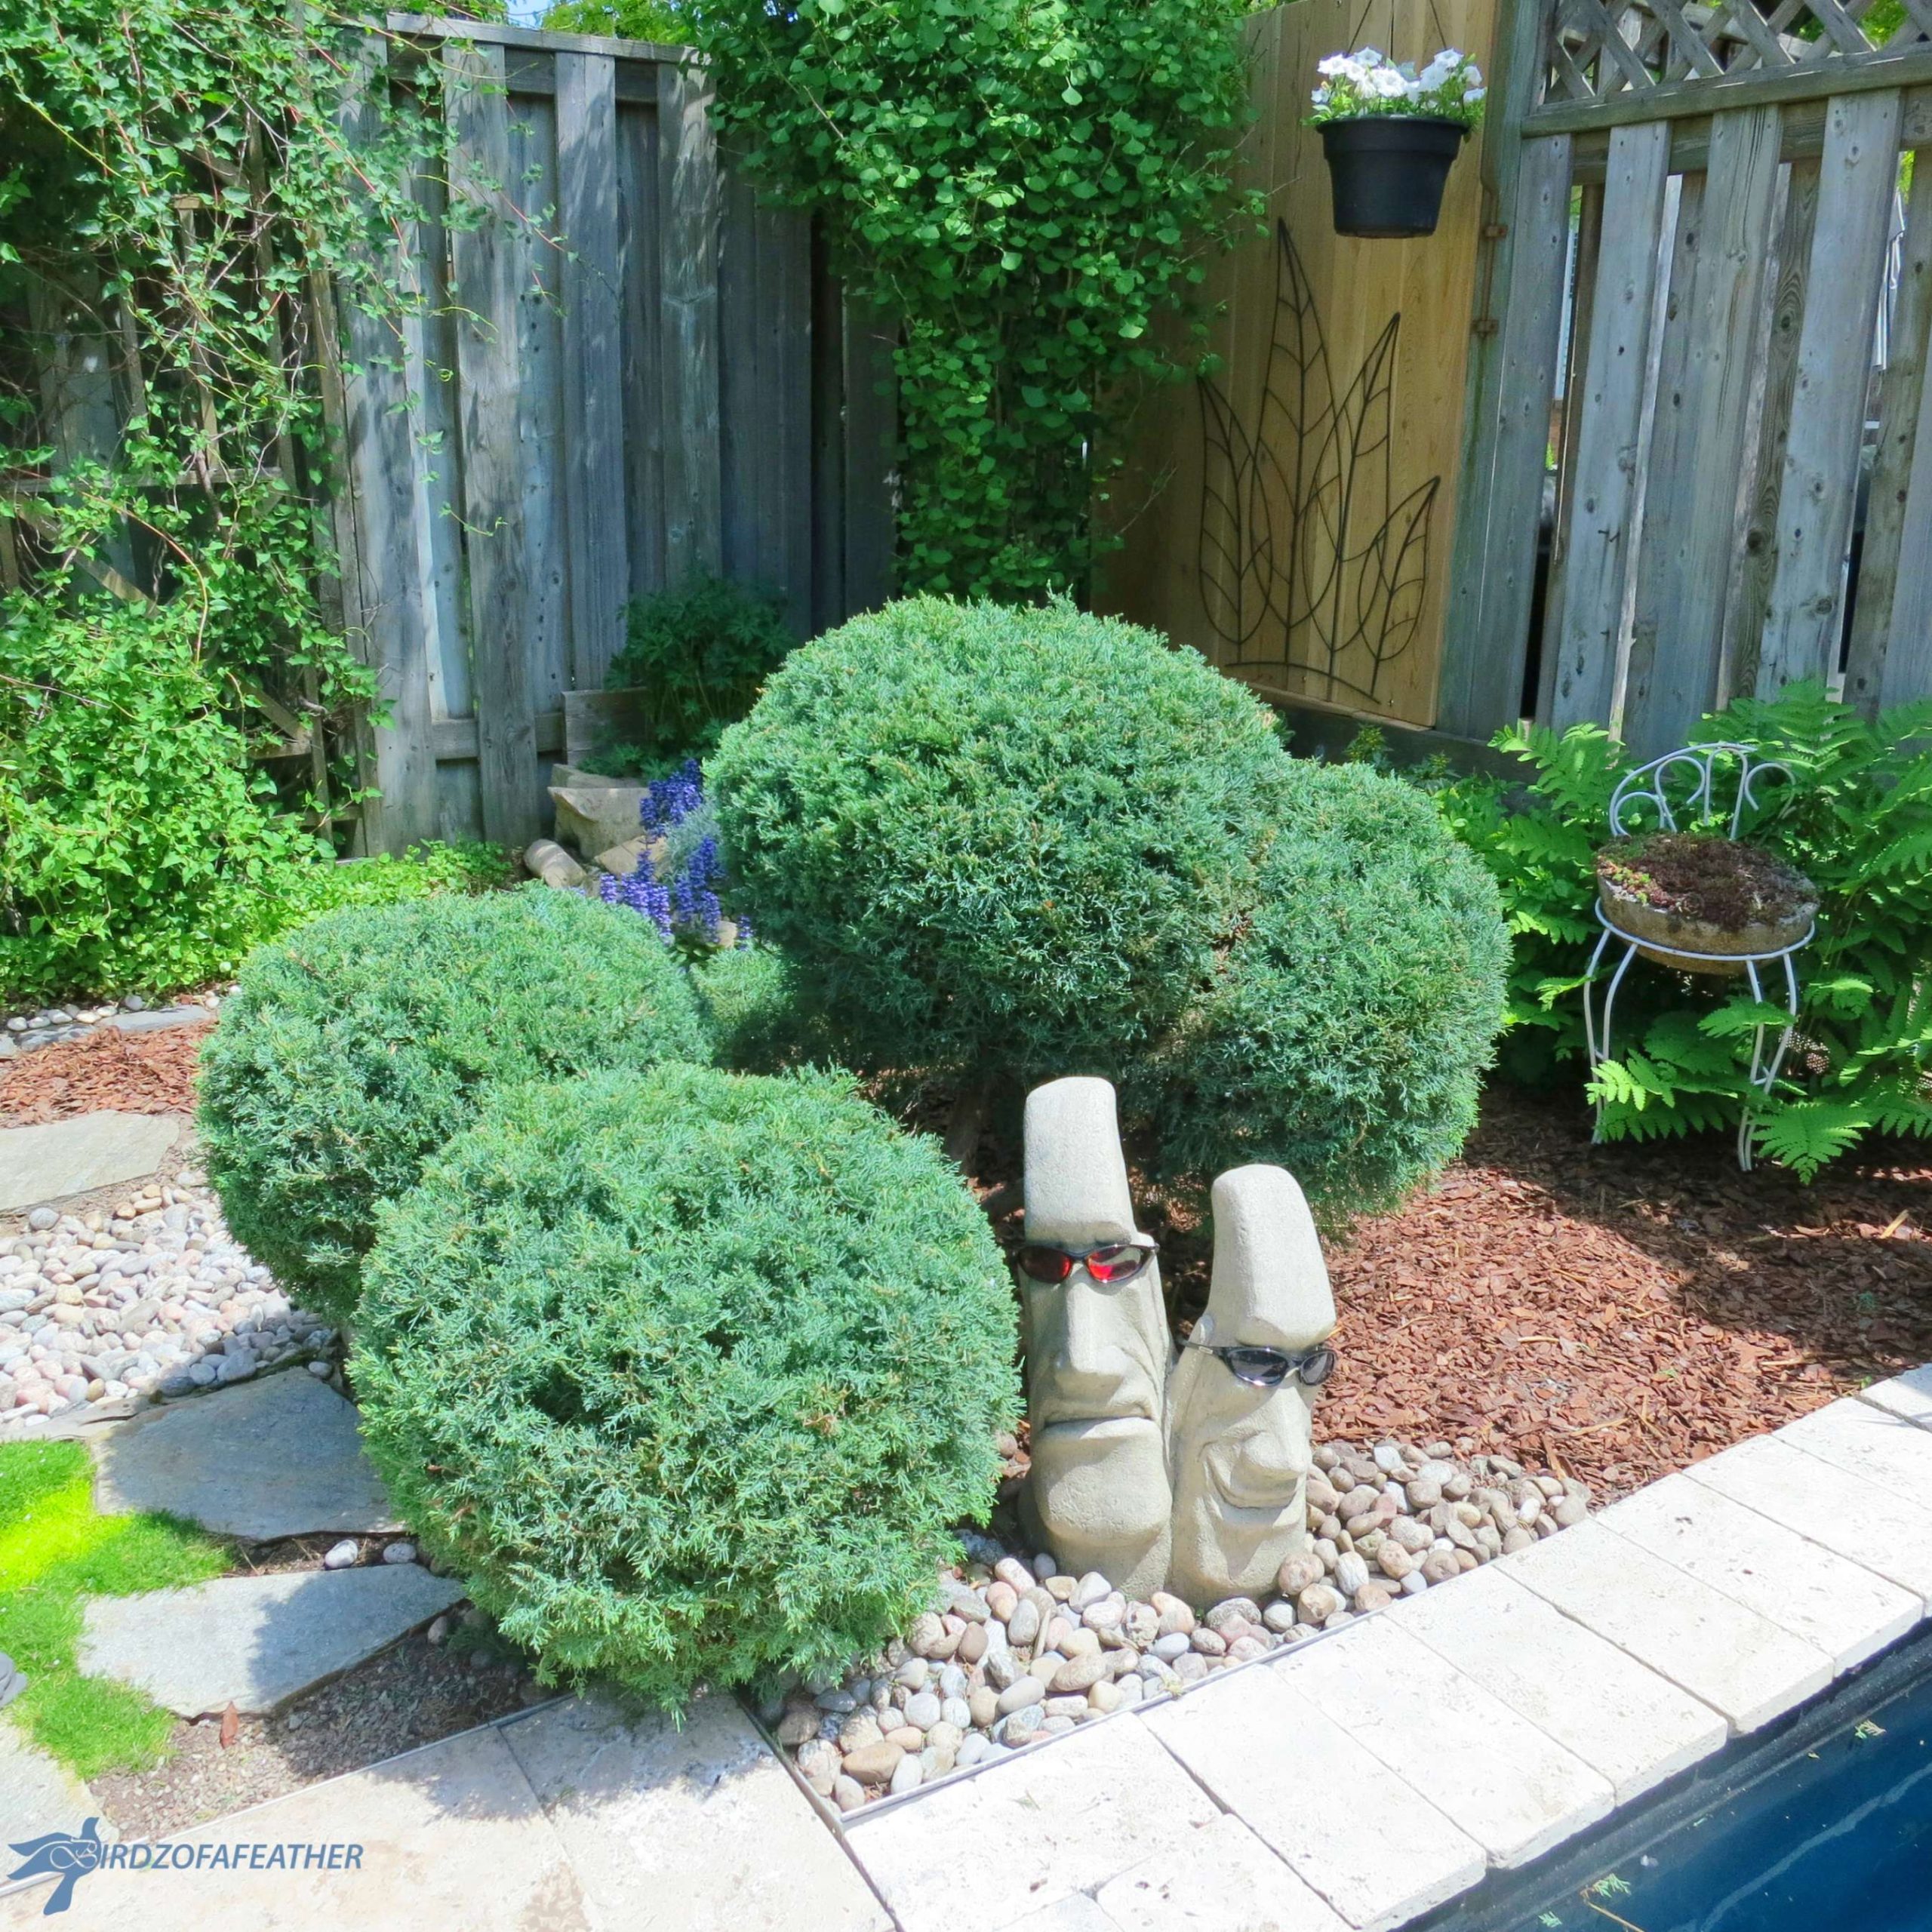 Reshape a Pom Pom Topiary - How to Prune - Birdz of a Feather